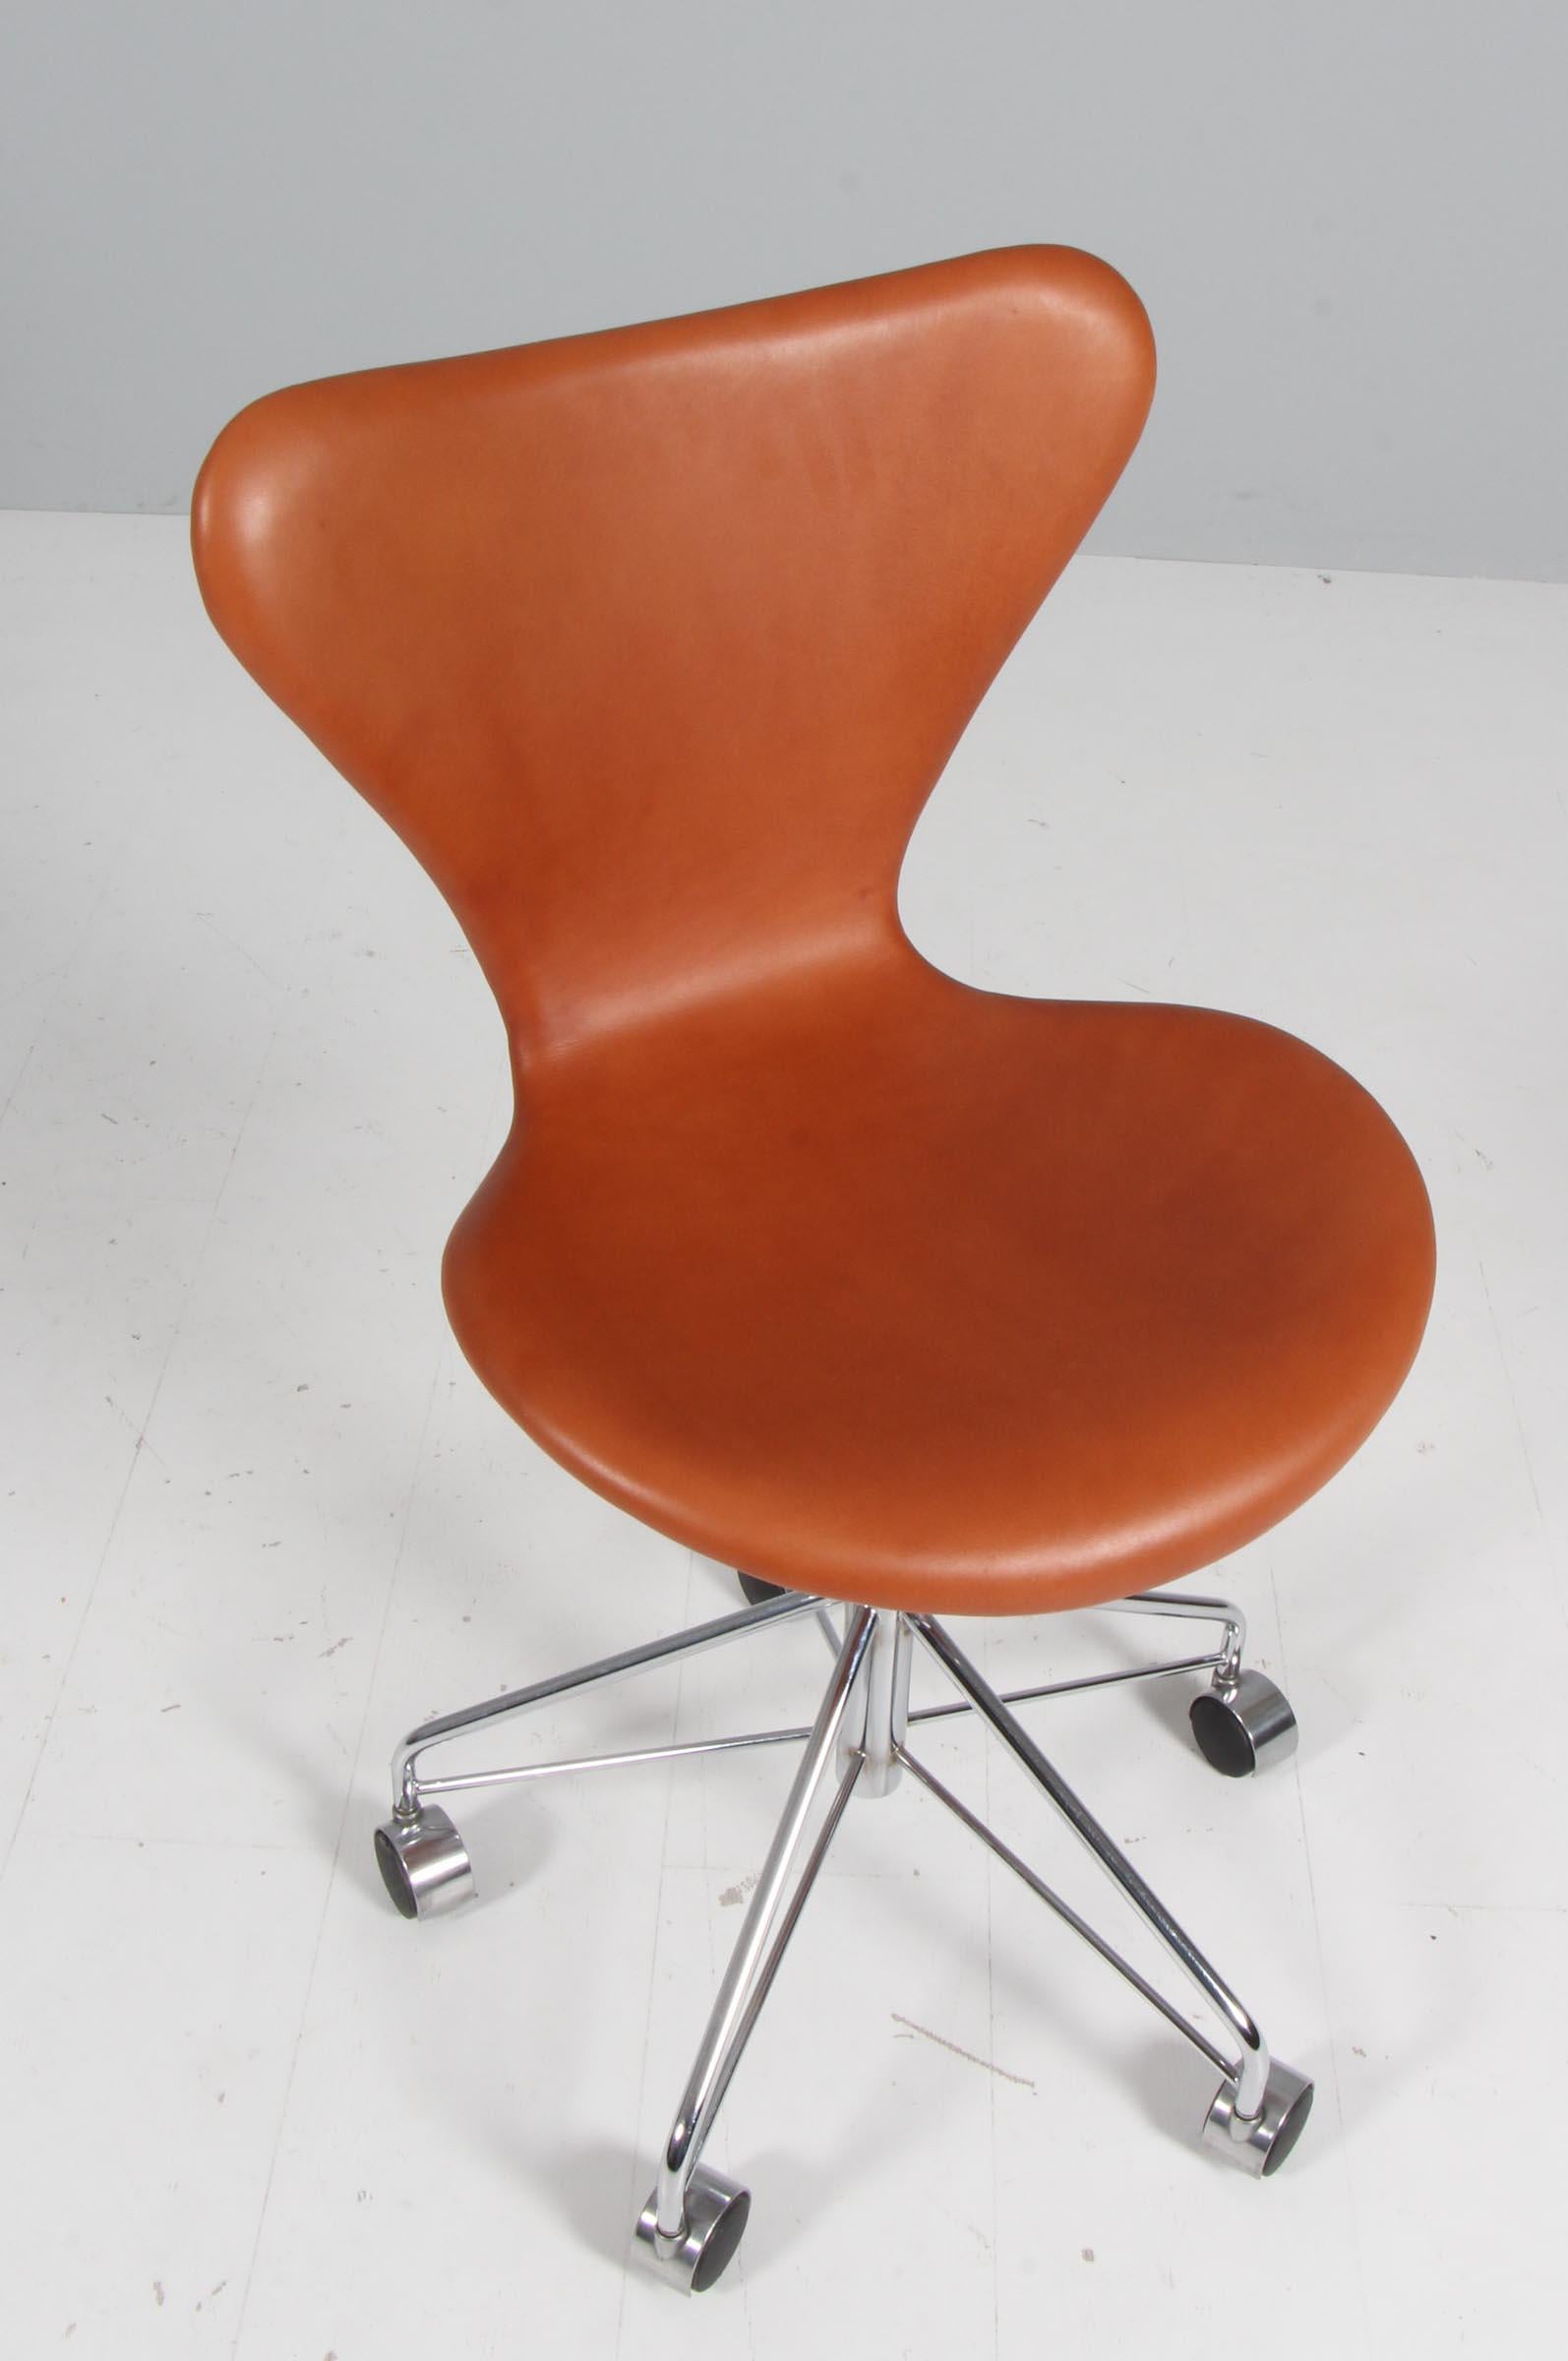 Chaise de bureau Arne Jacobsen neuve recouverte de cuir aniline cognac.

Base en tube d'acier chromé.

Modèle 3117 Syveren, fabriqué par Fritz Hansen.